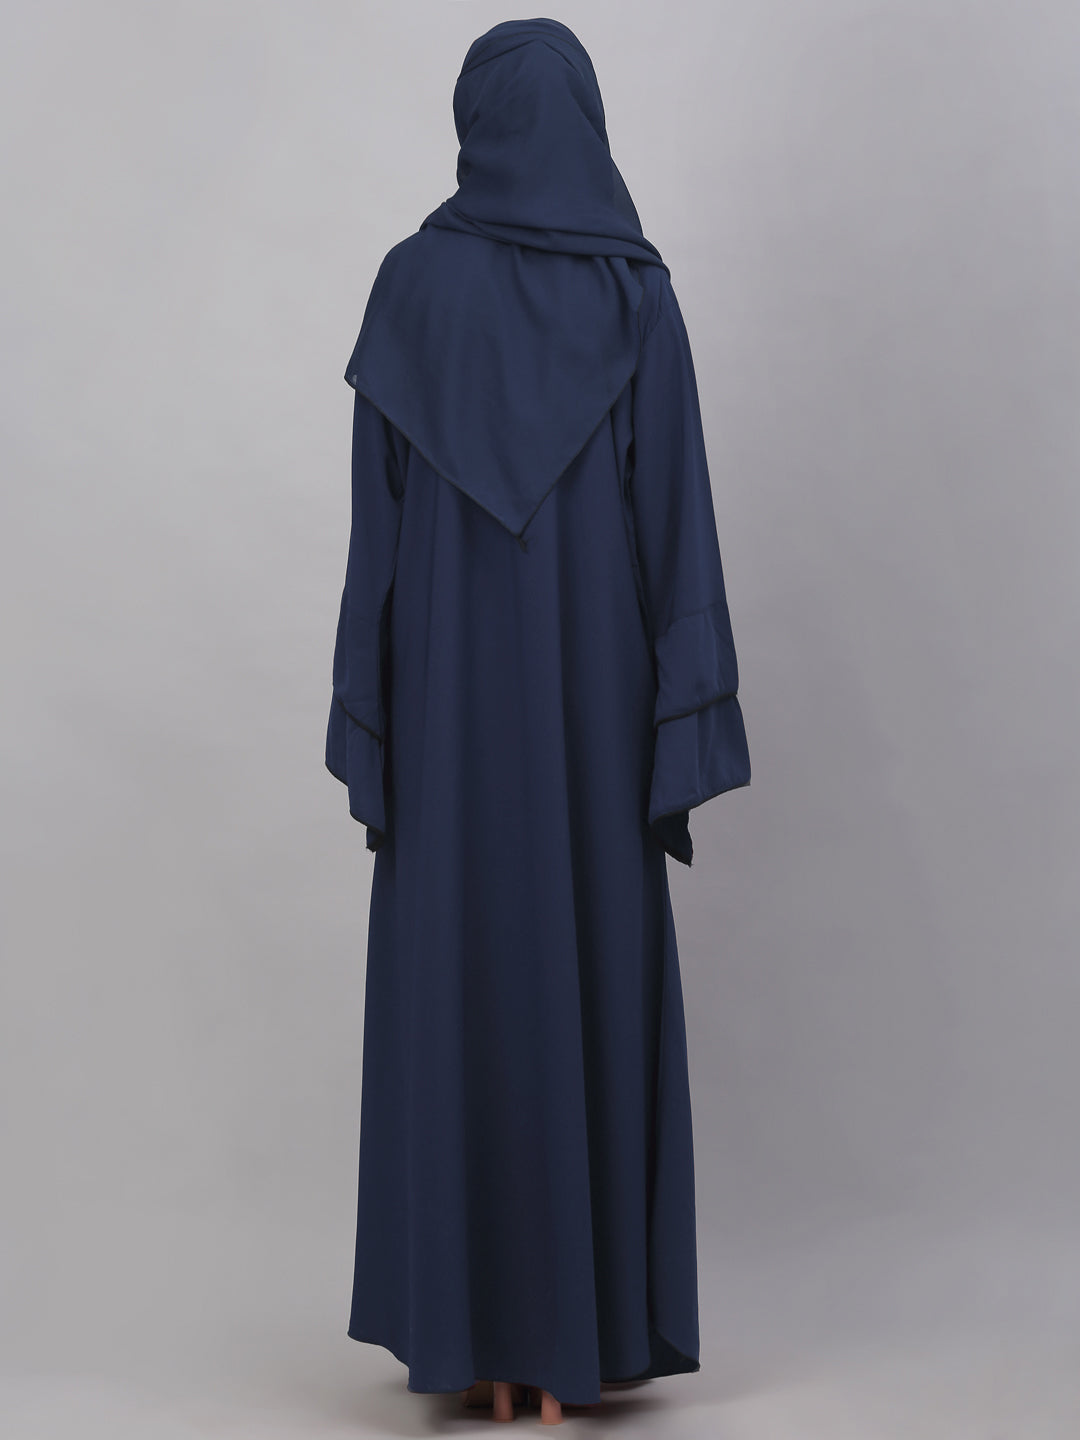 Klotthe Women Blue Embellished Burqa With Scarves